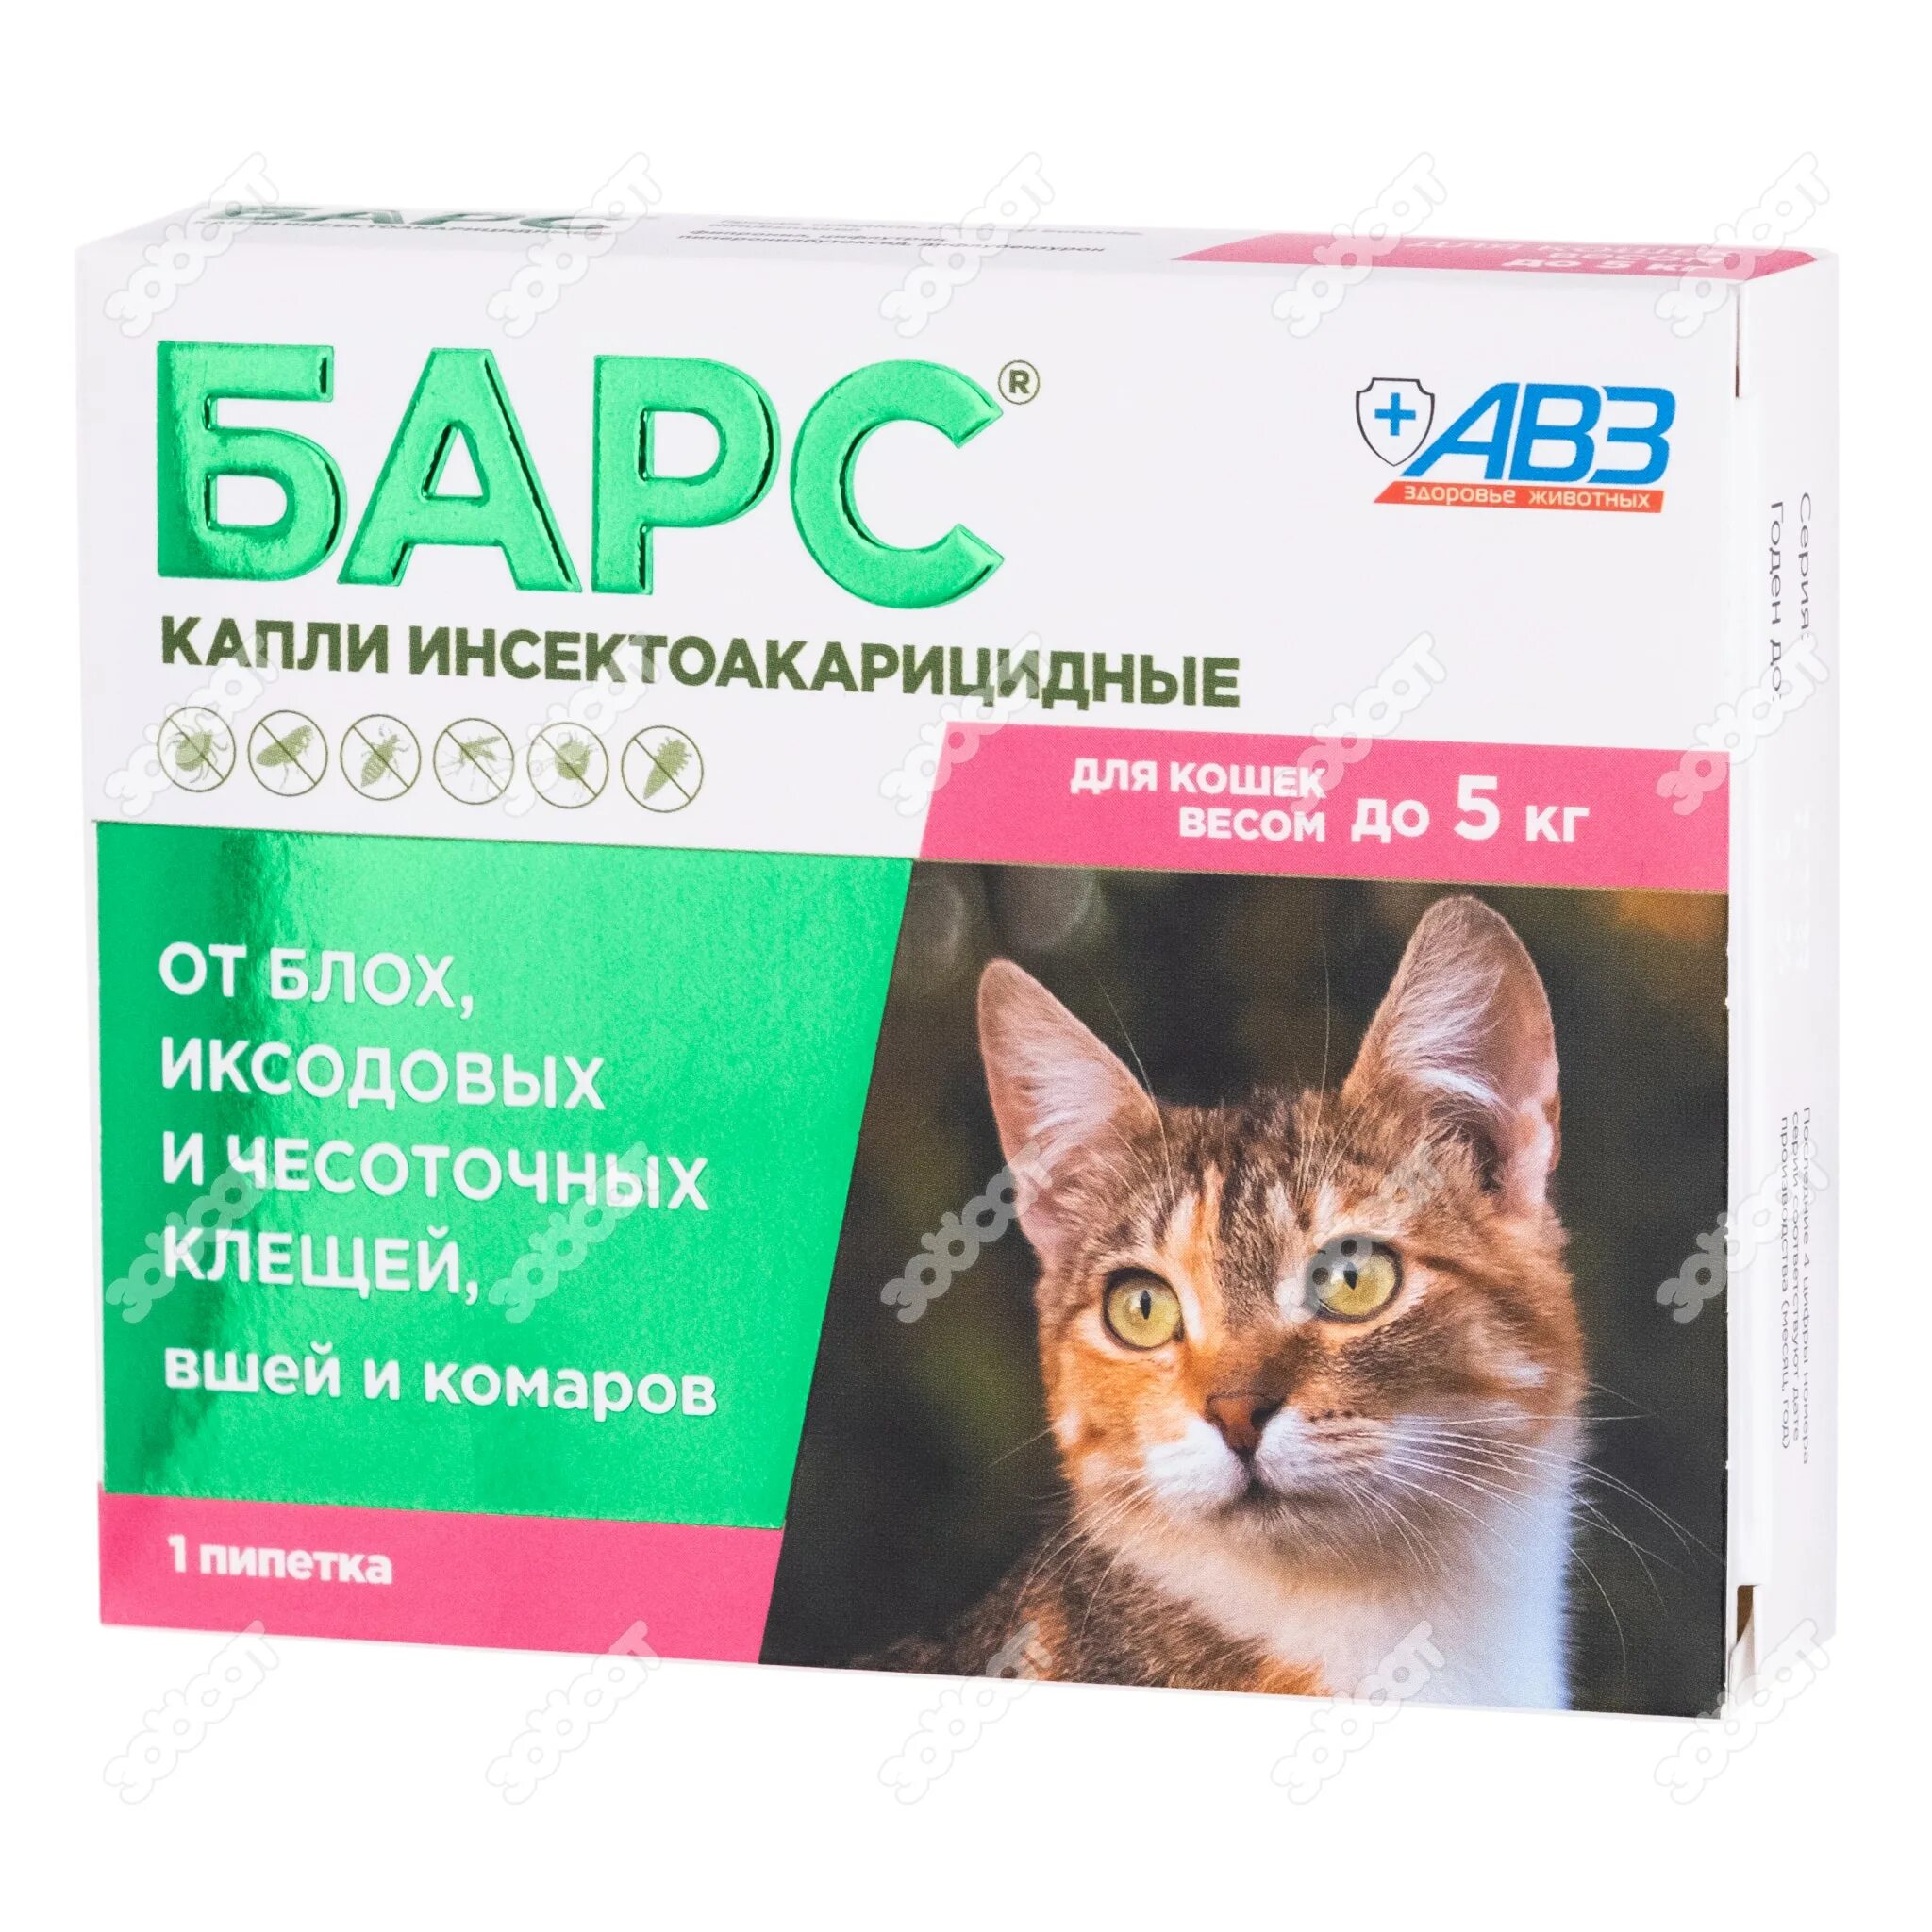 Барс до 5 кг. Барс капли инсектоакарицидные для кошек до 5 кг 1 пипетка. Капли для кошек АВЗ Барс. Барс капли инсектоакарицидные для кошек от 5 до 10кг. Капли инсектоакарицидные Барс для кошек от 2 до 5 кг.